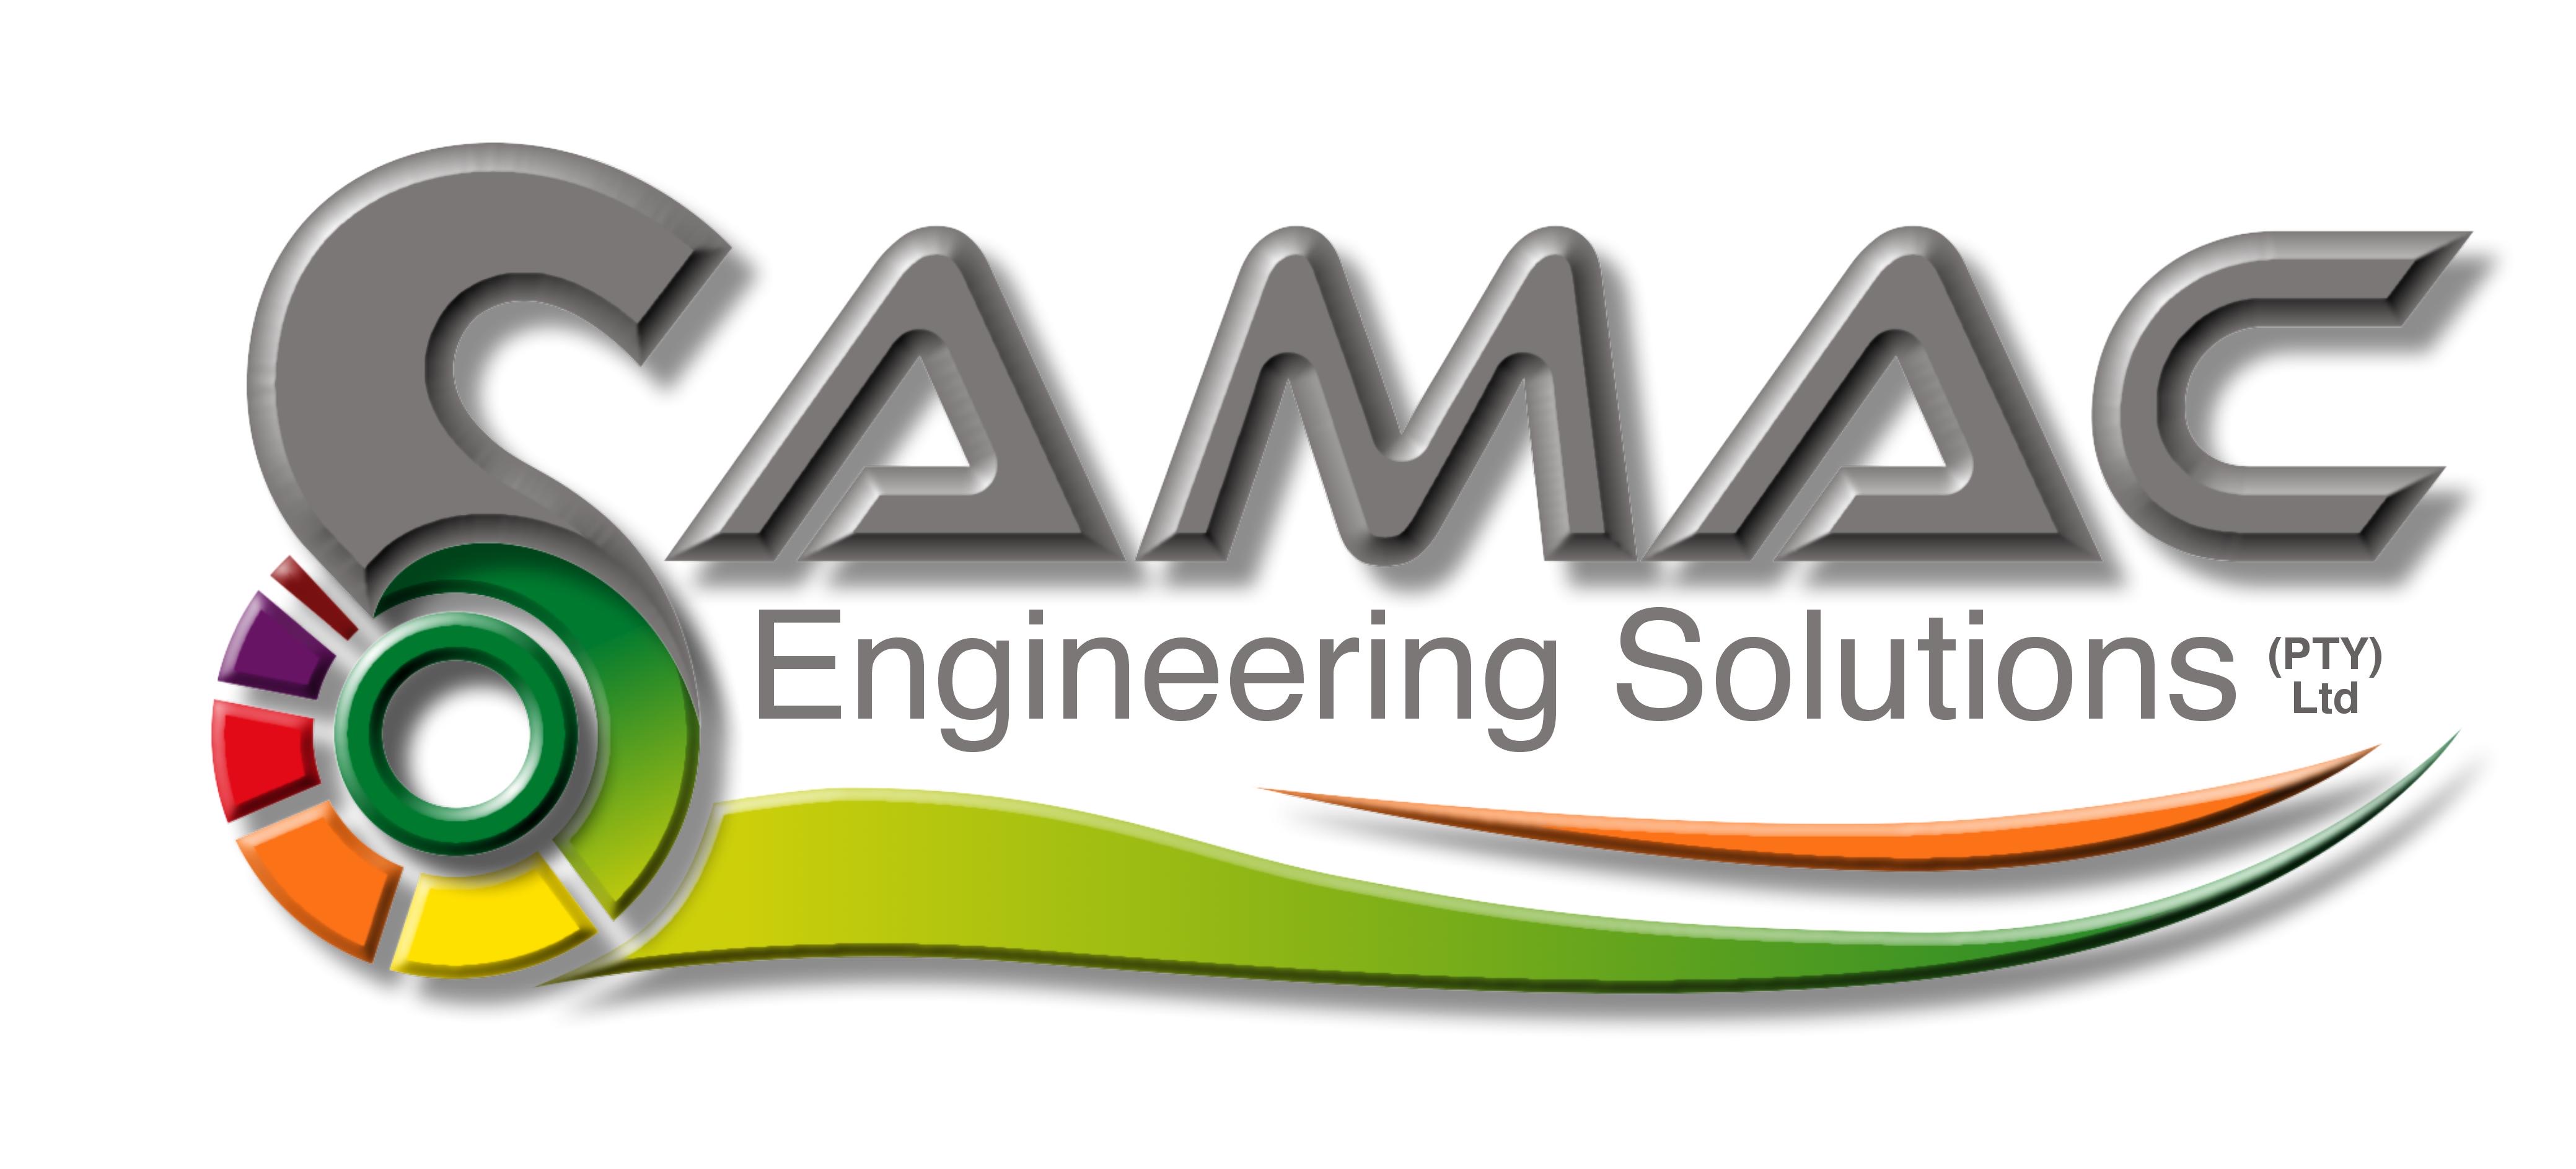 samac logo high